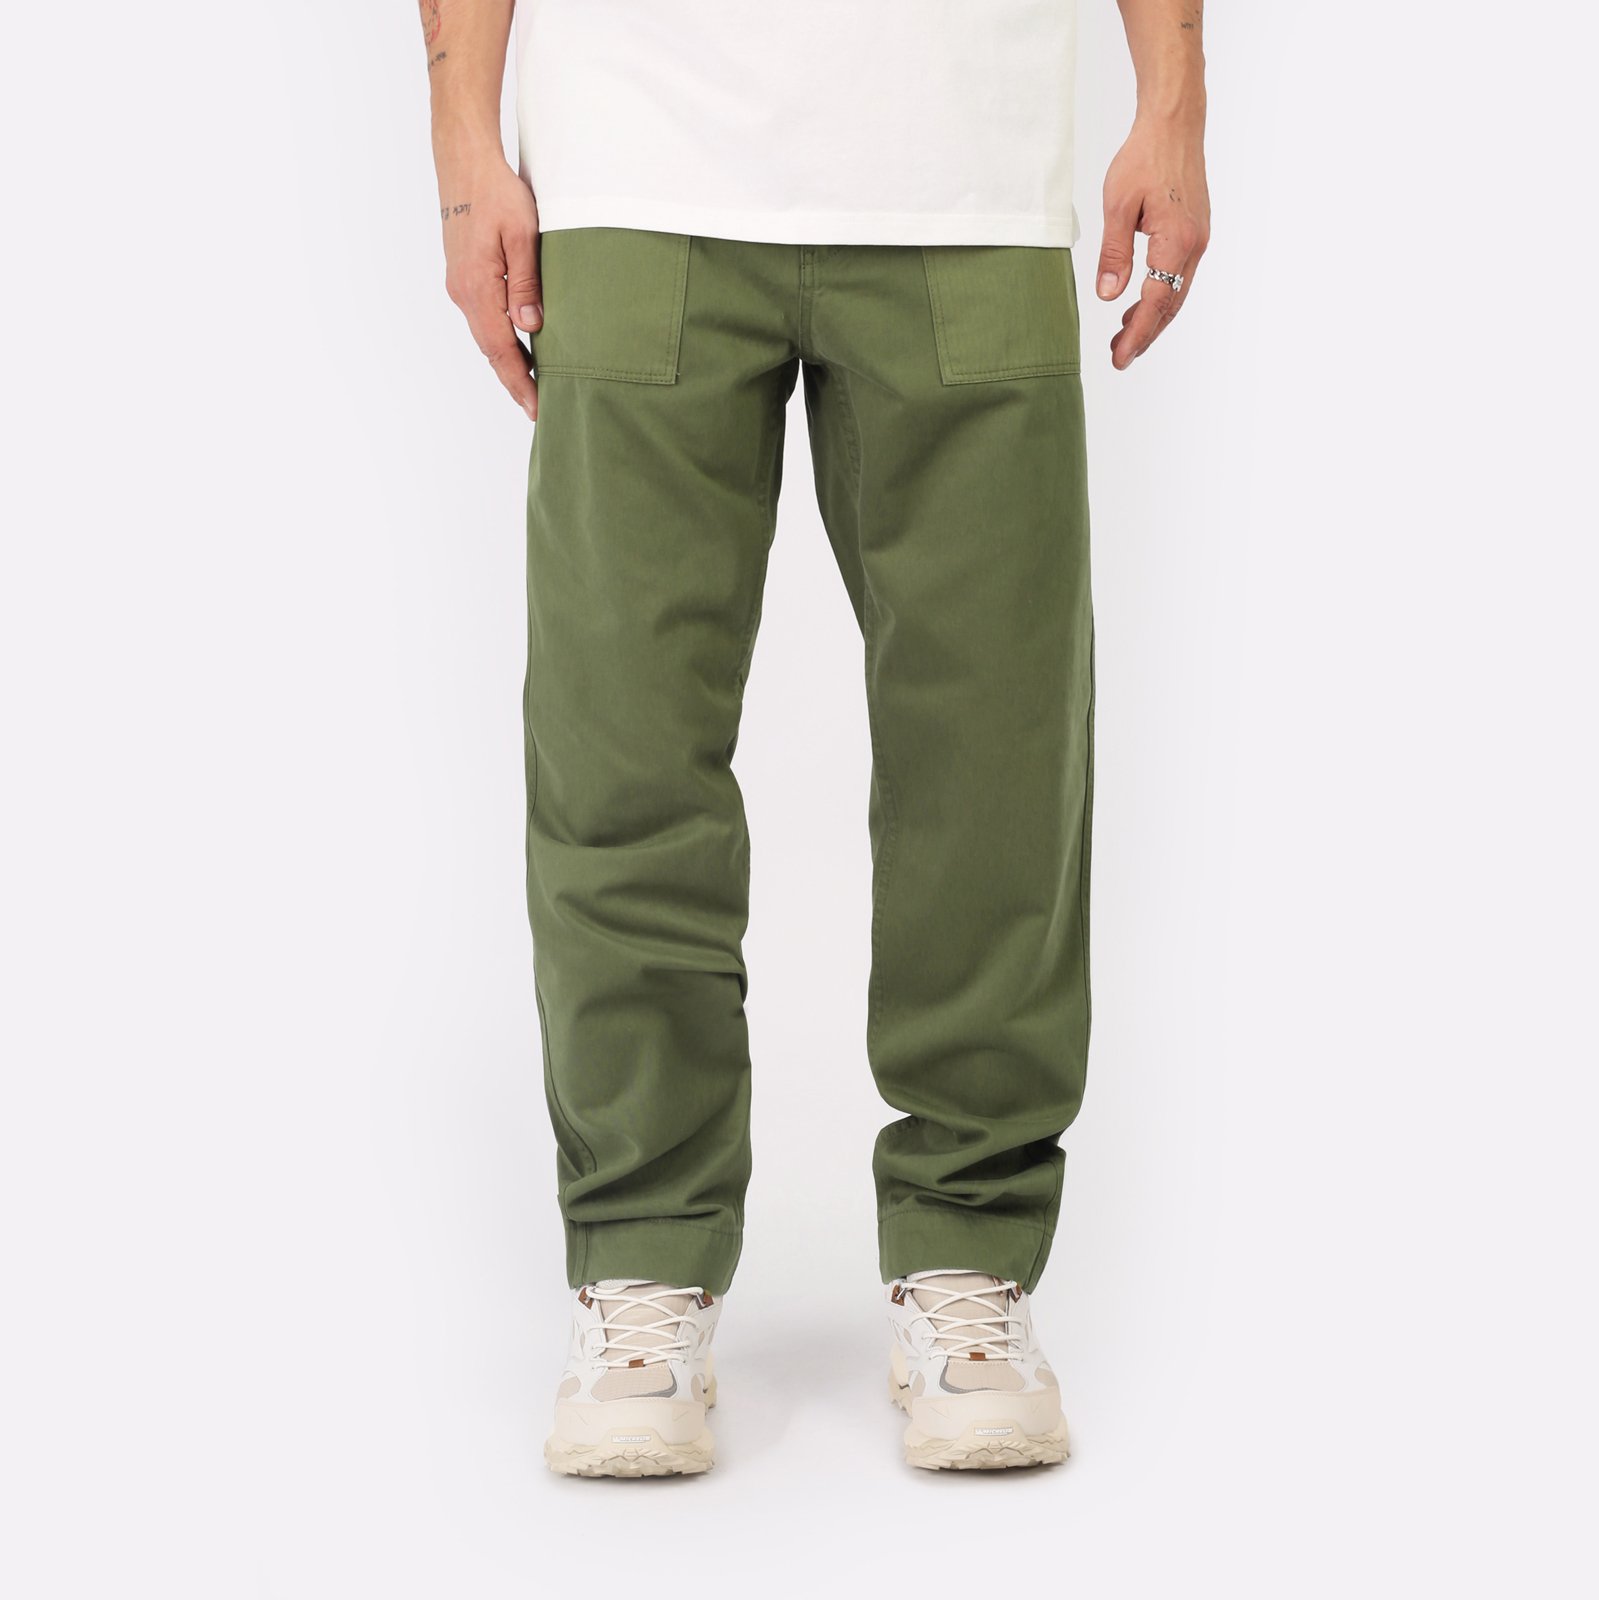 Мужские брюки Alpha Industries Fatigue Pant (MBO52500C1-OG-107-green)  - цена, описание, фото 1